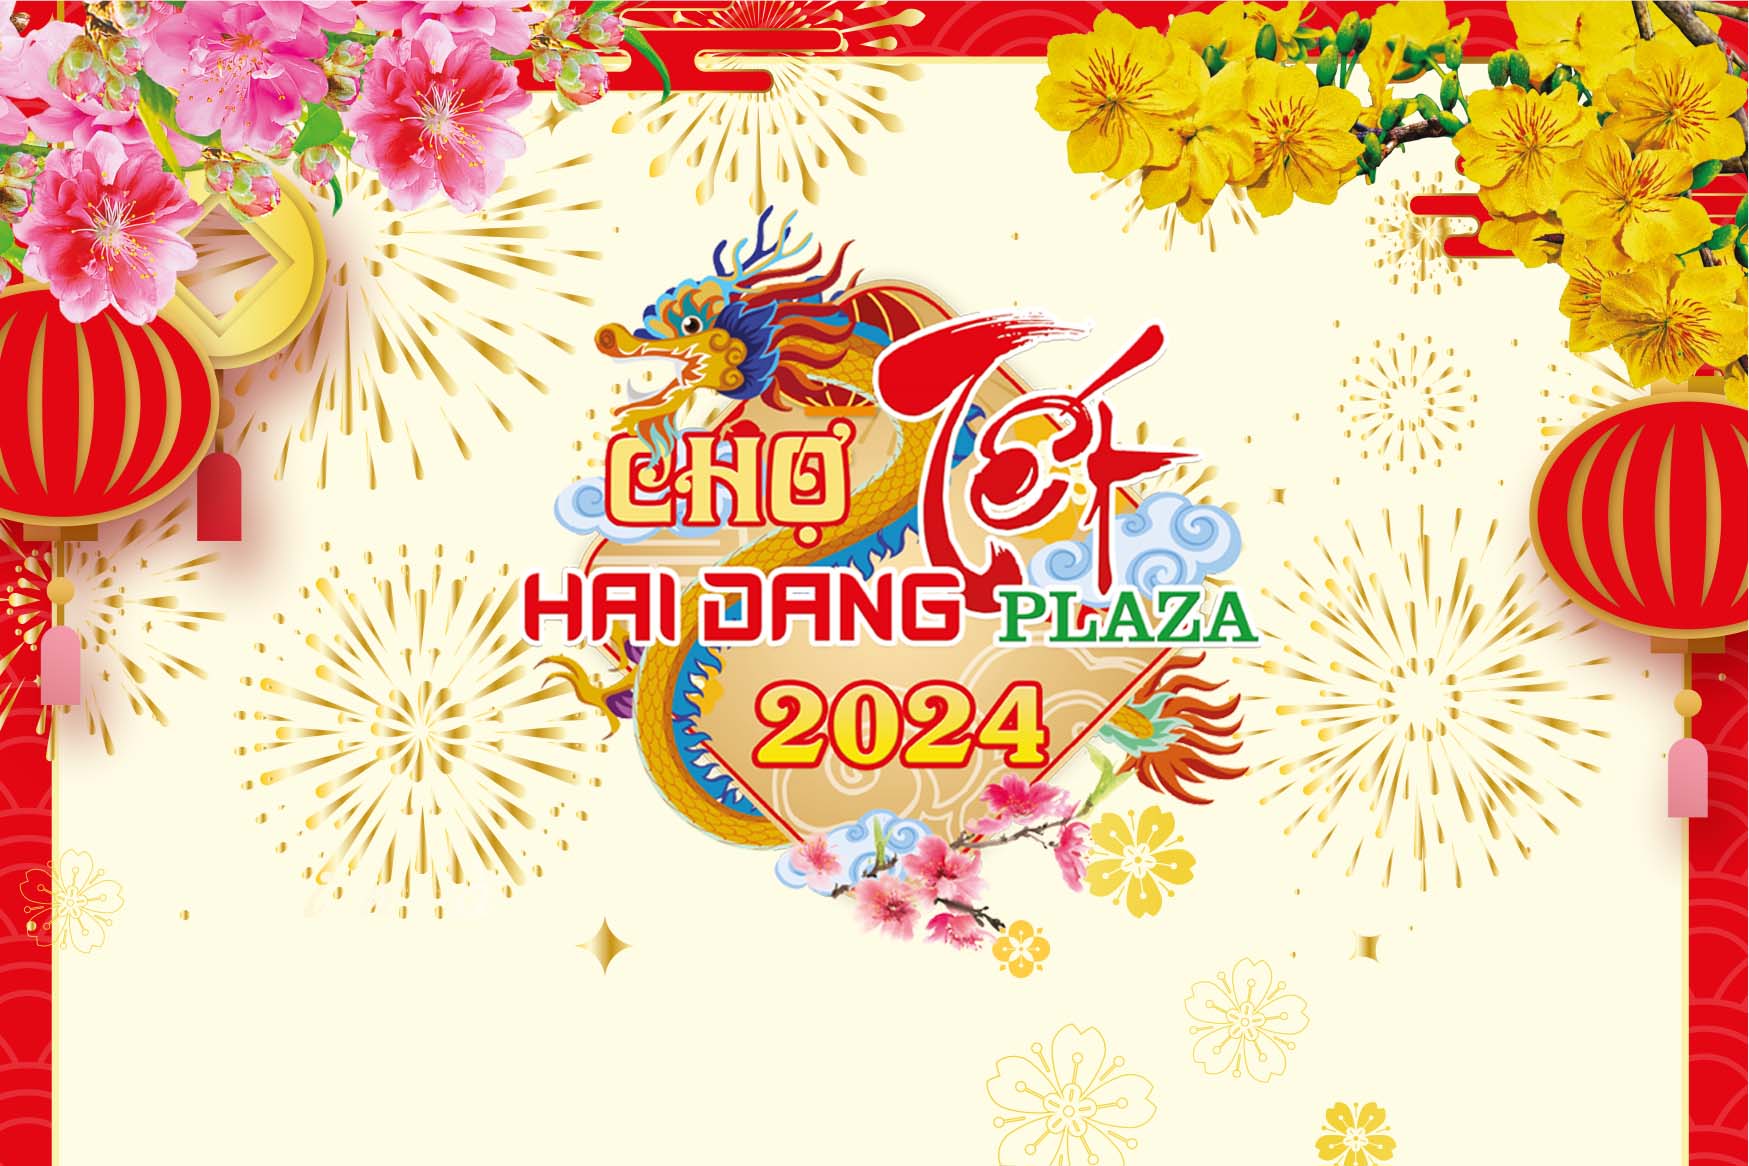 Chợ Tết Hải Đăng Plaza 2024 - Mừng Xuân sang, Đón Tết rộn ràng, Ngập tràn quà tặng